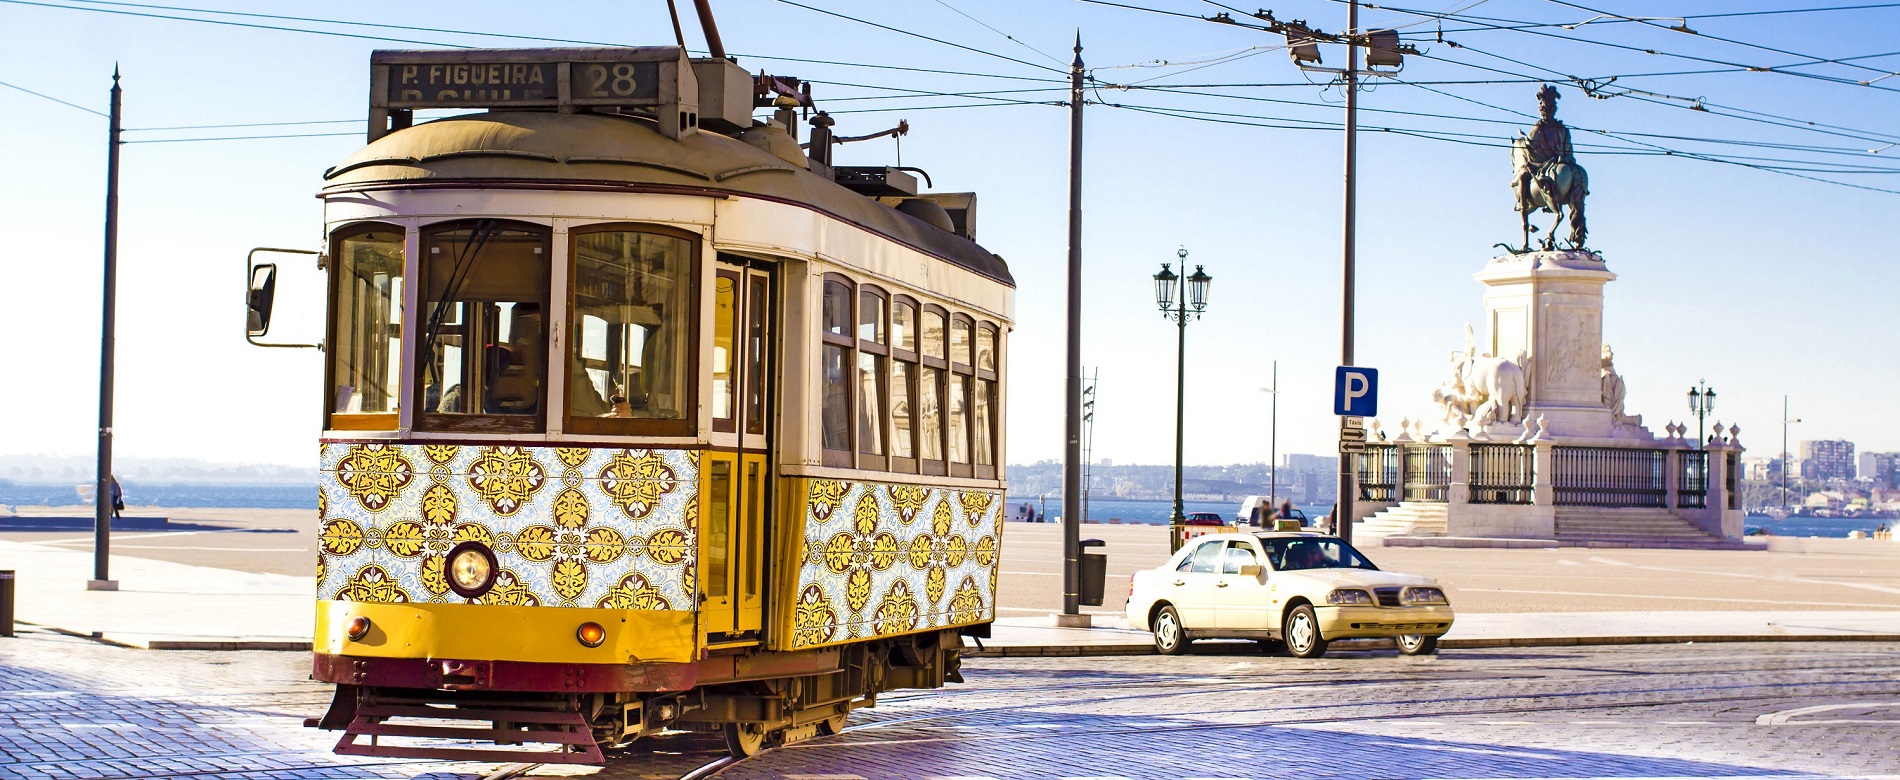 Vista de una calle con el tranvía en Lisboa.